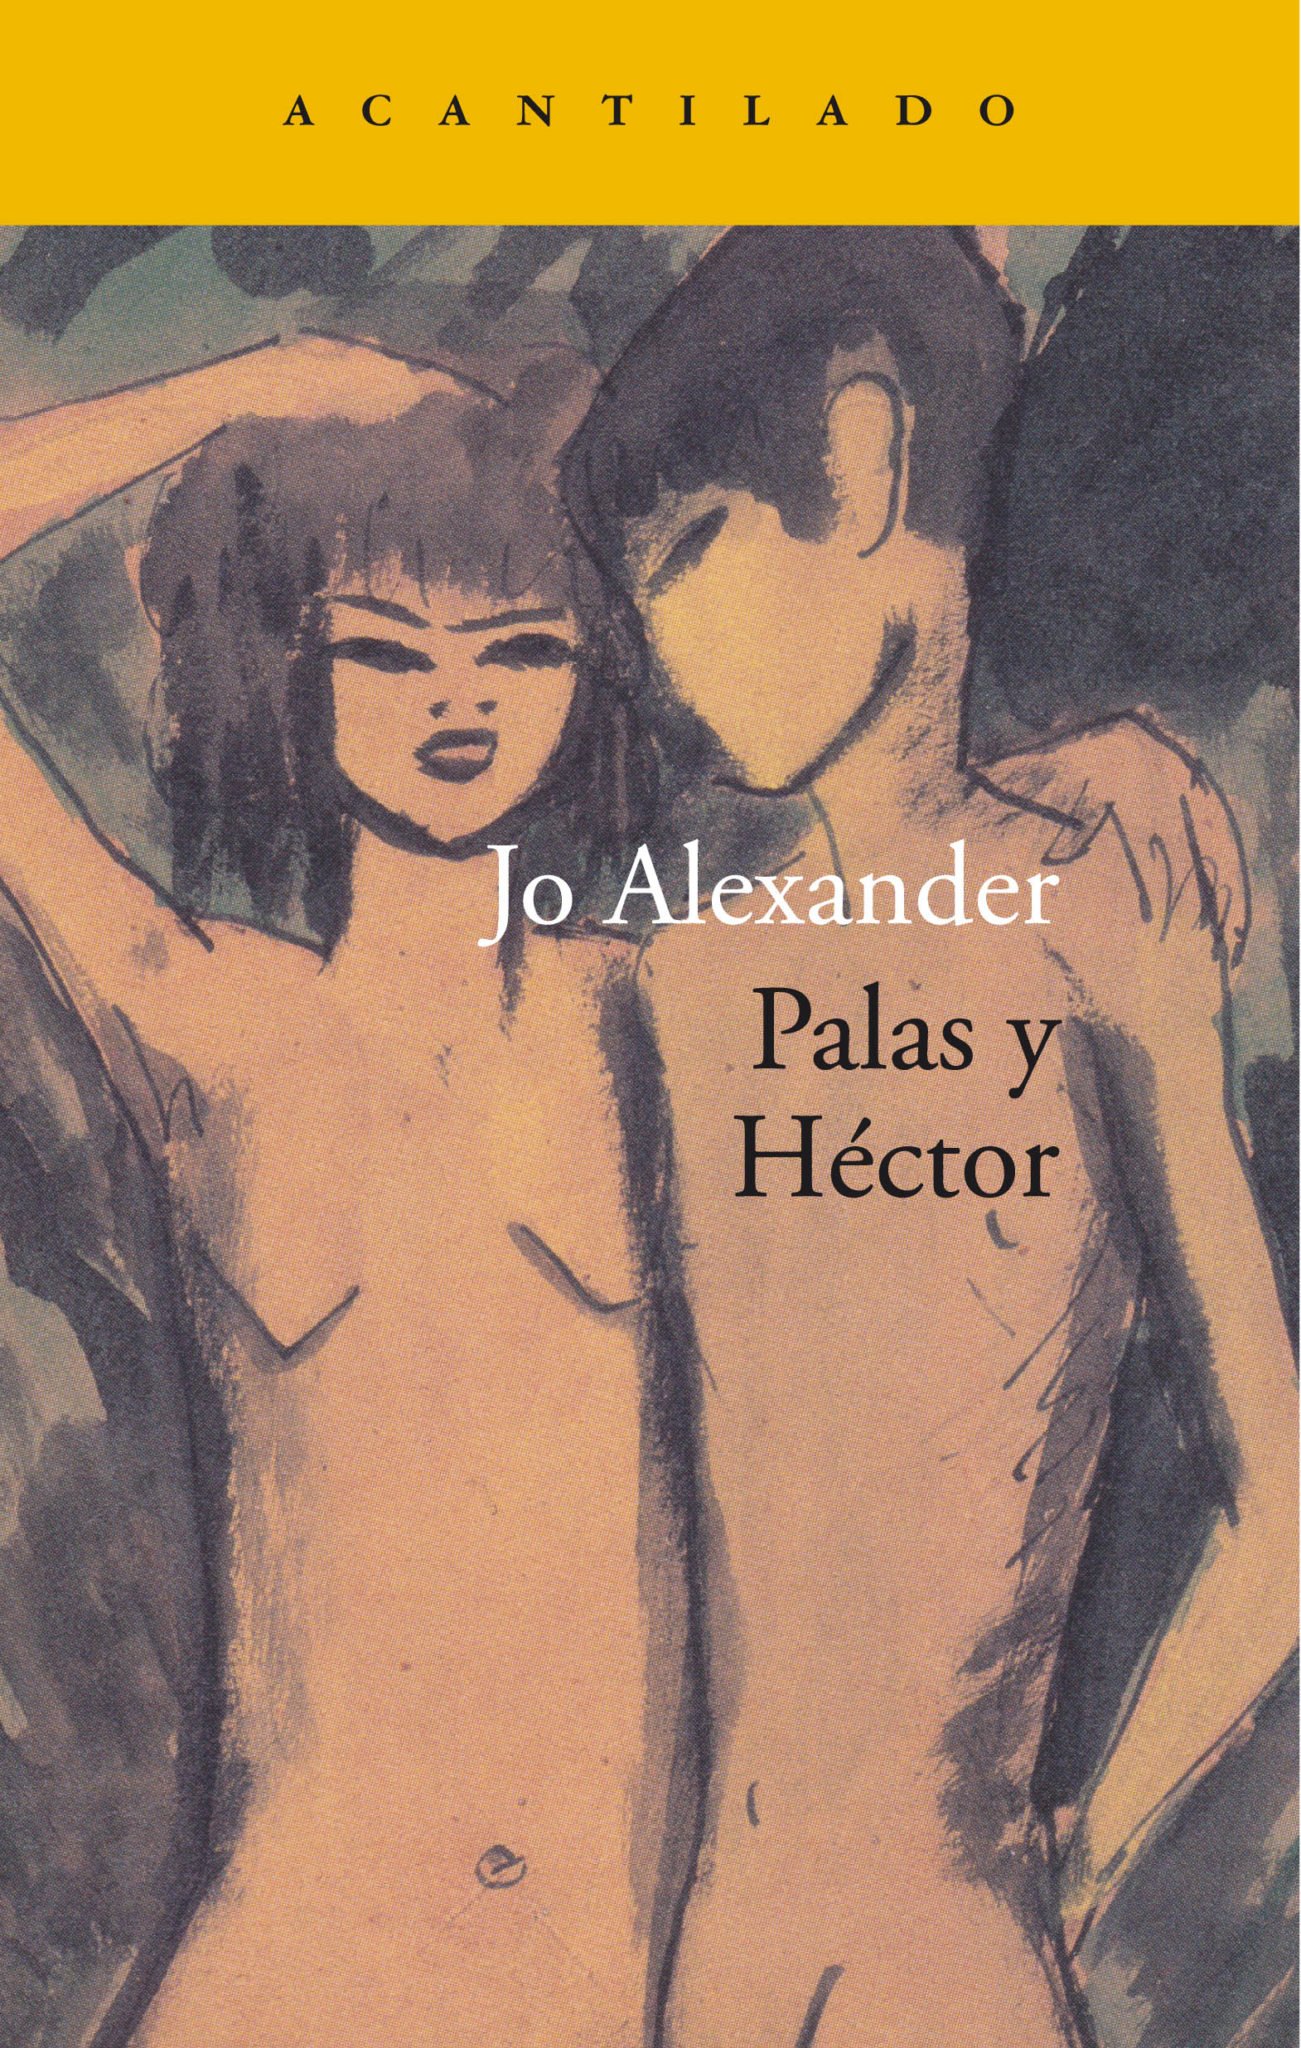 Jo Alexander, autora de 'Palas y Héctor': "Me atrae la sensualidad oscura"